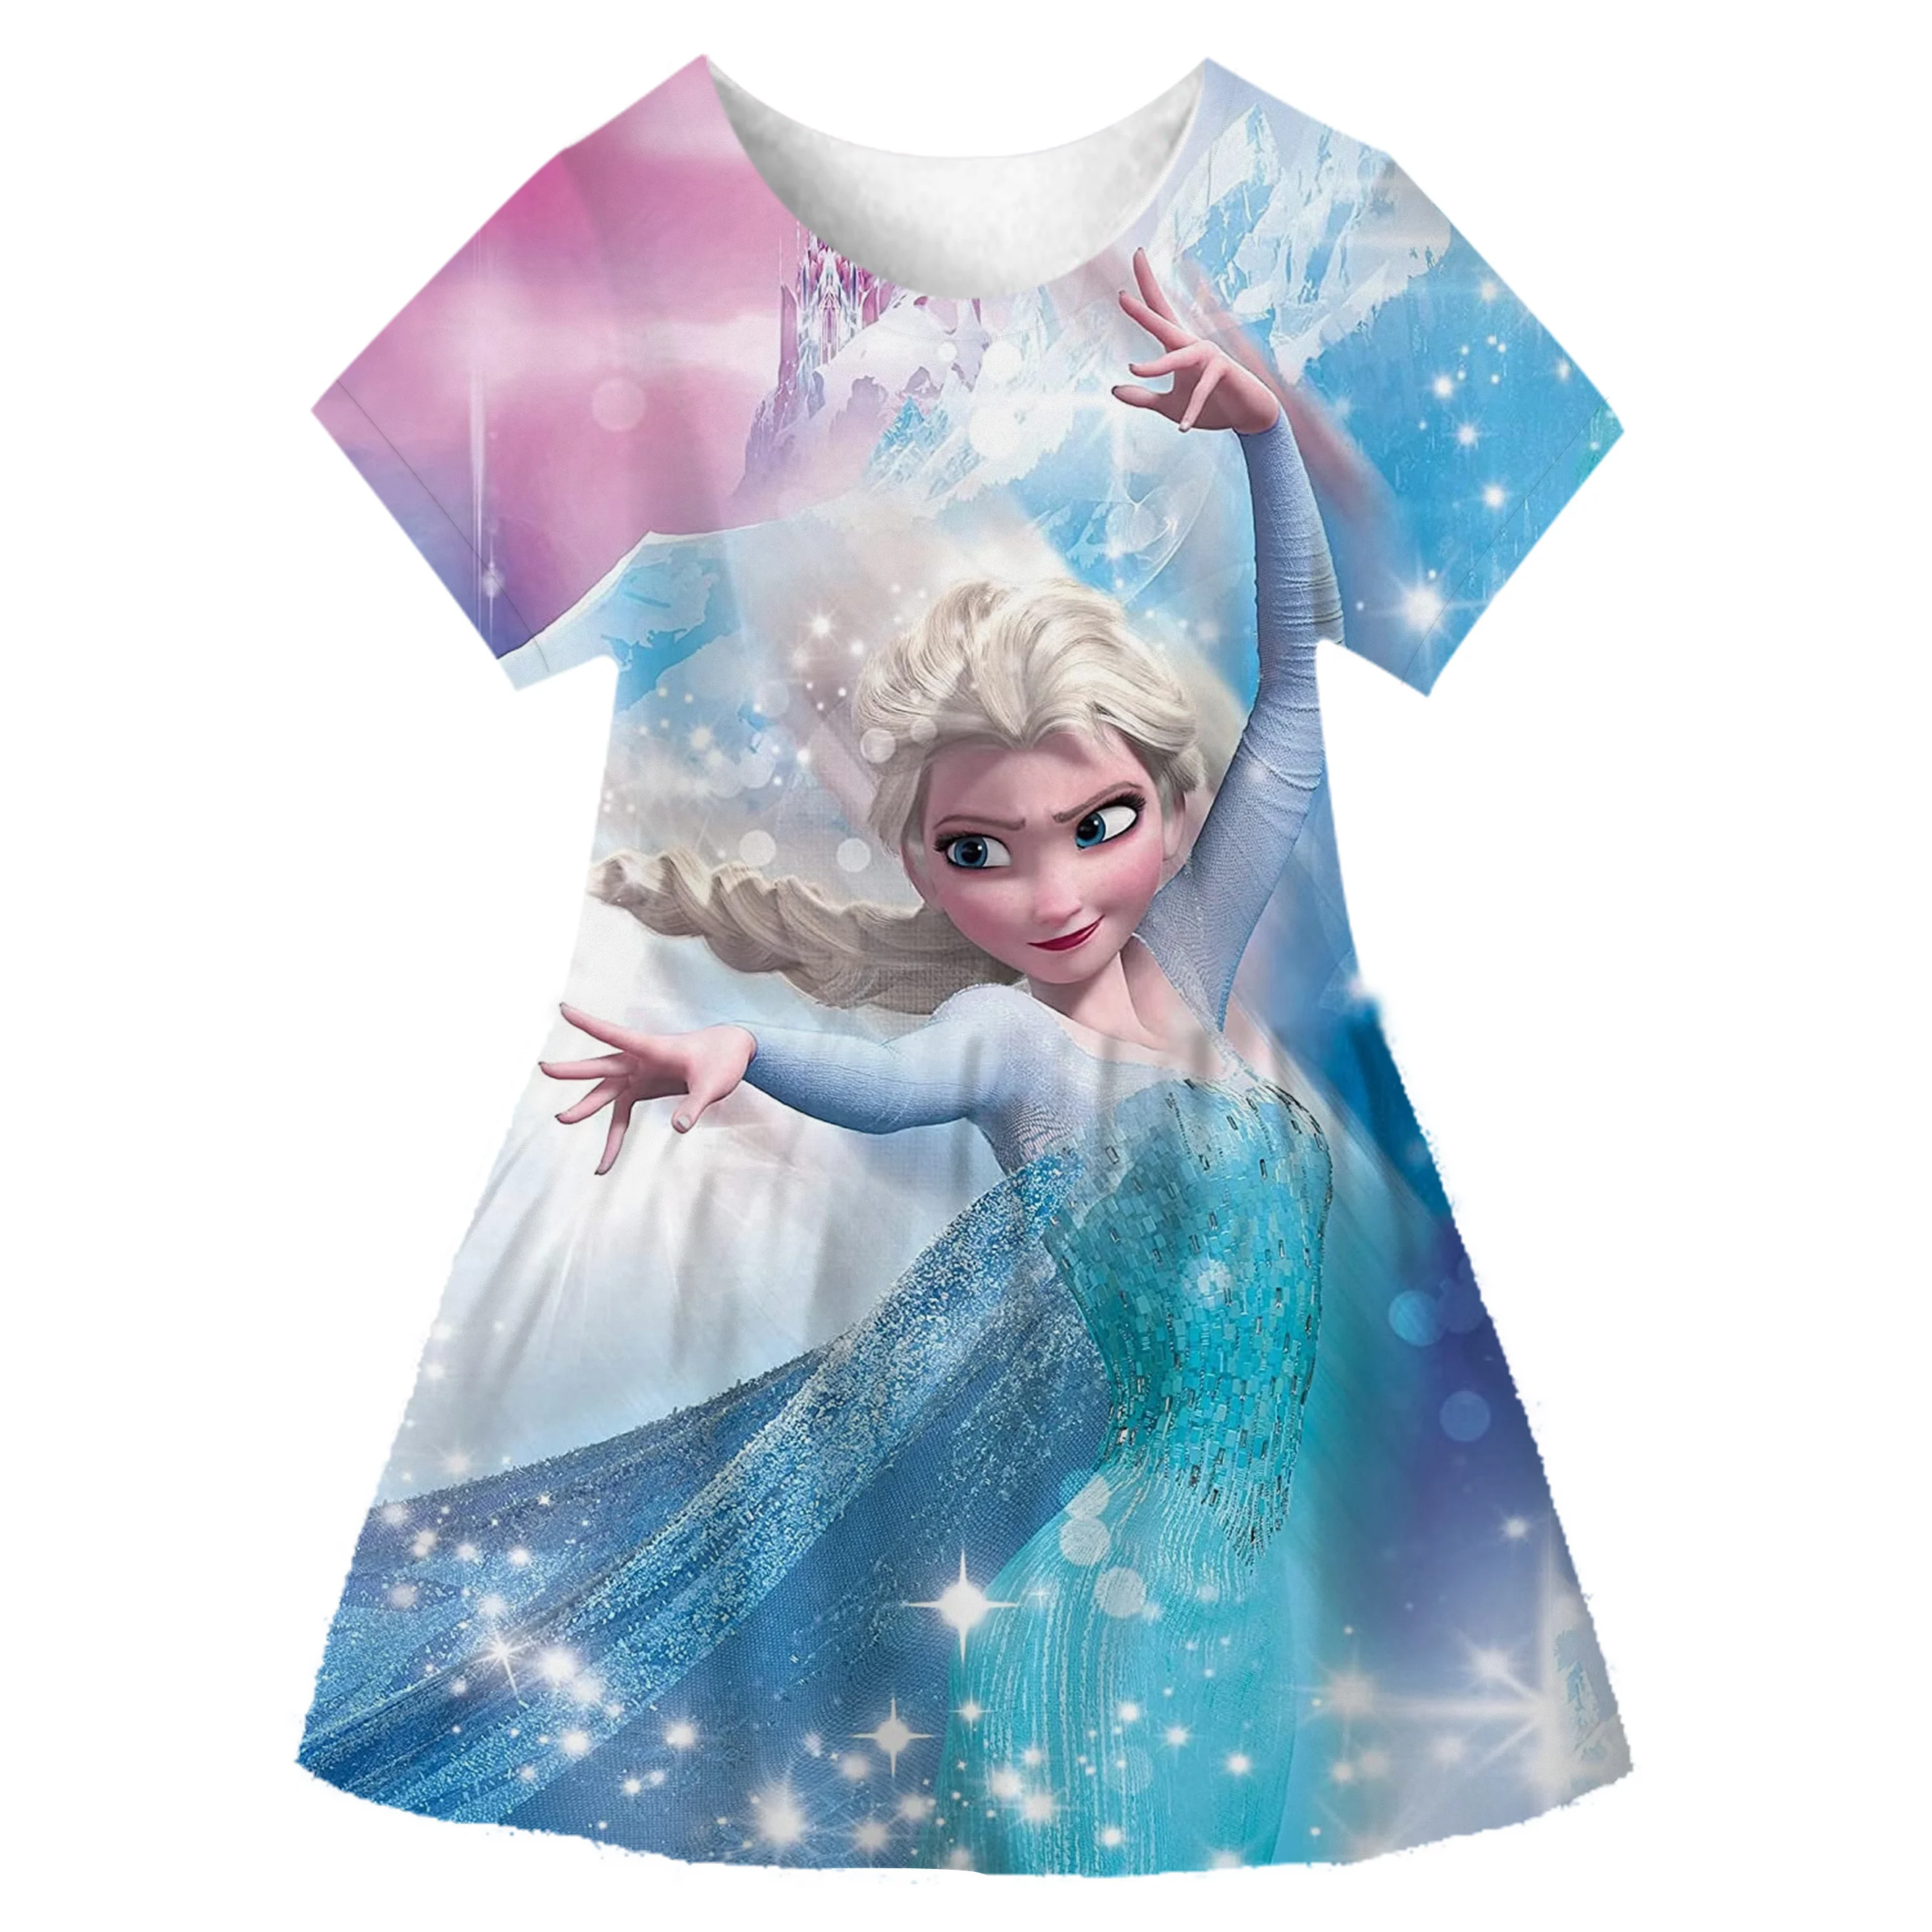 

Детские платья для девочек, рождественские наряды, мультяшное платье принцессы «Холодное сердце», летние костюмы для косплея, Свадебная вечеринка, официальное бальное платье